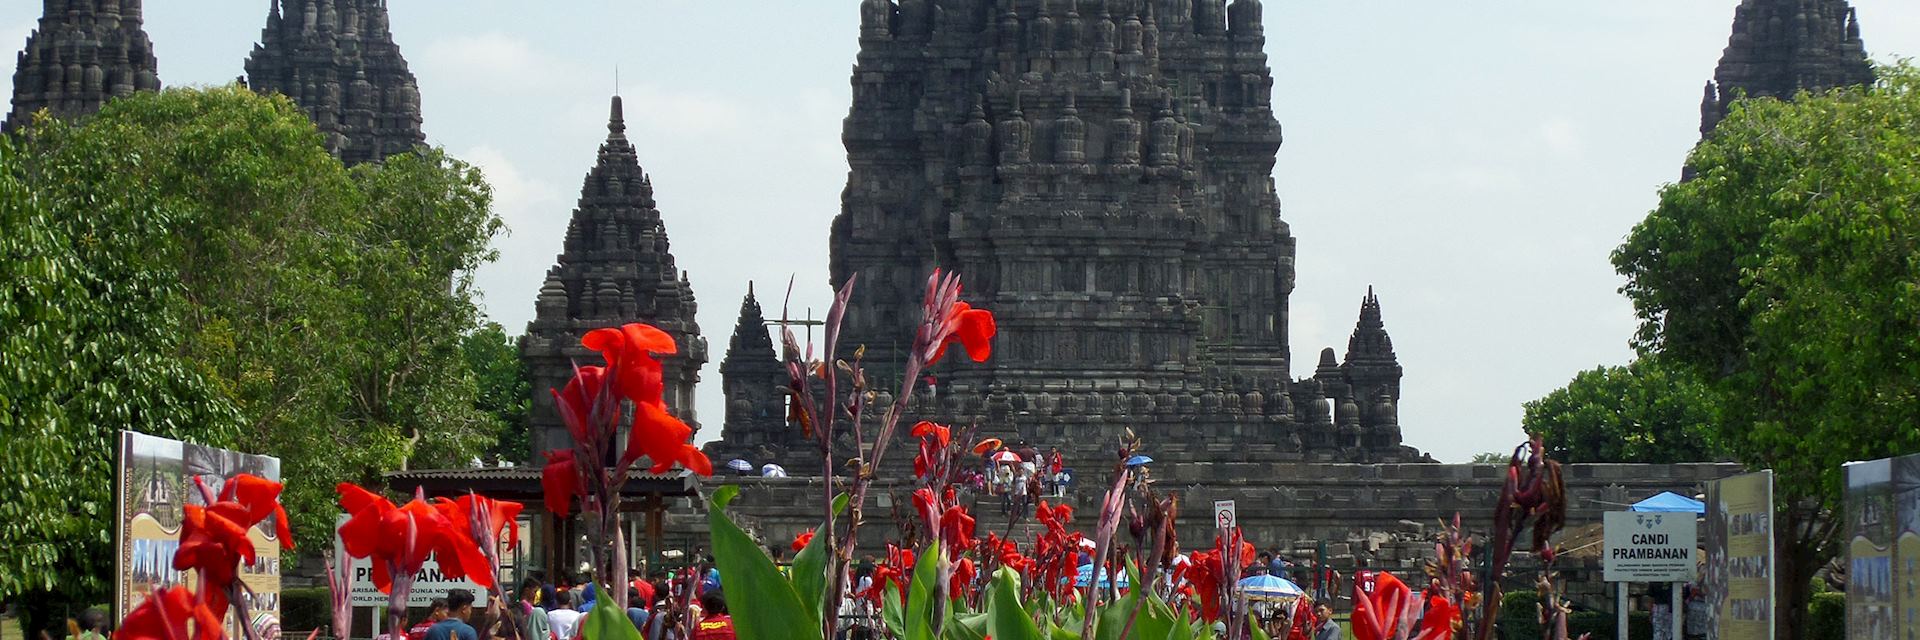 Prambanan Temple, Yogyakarta